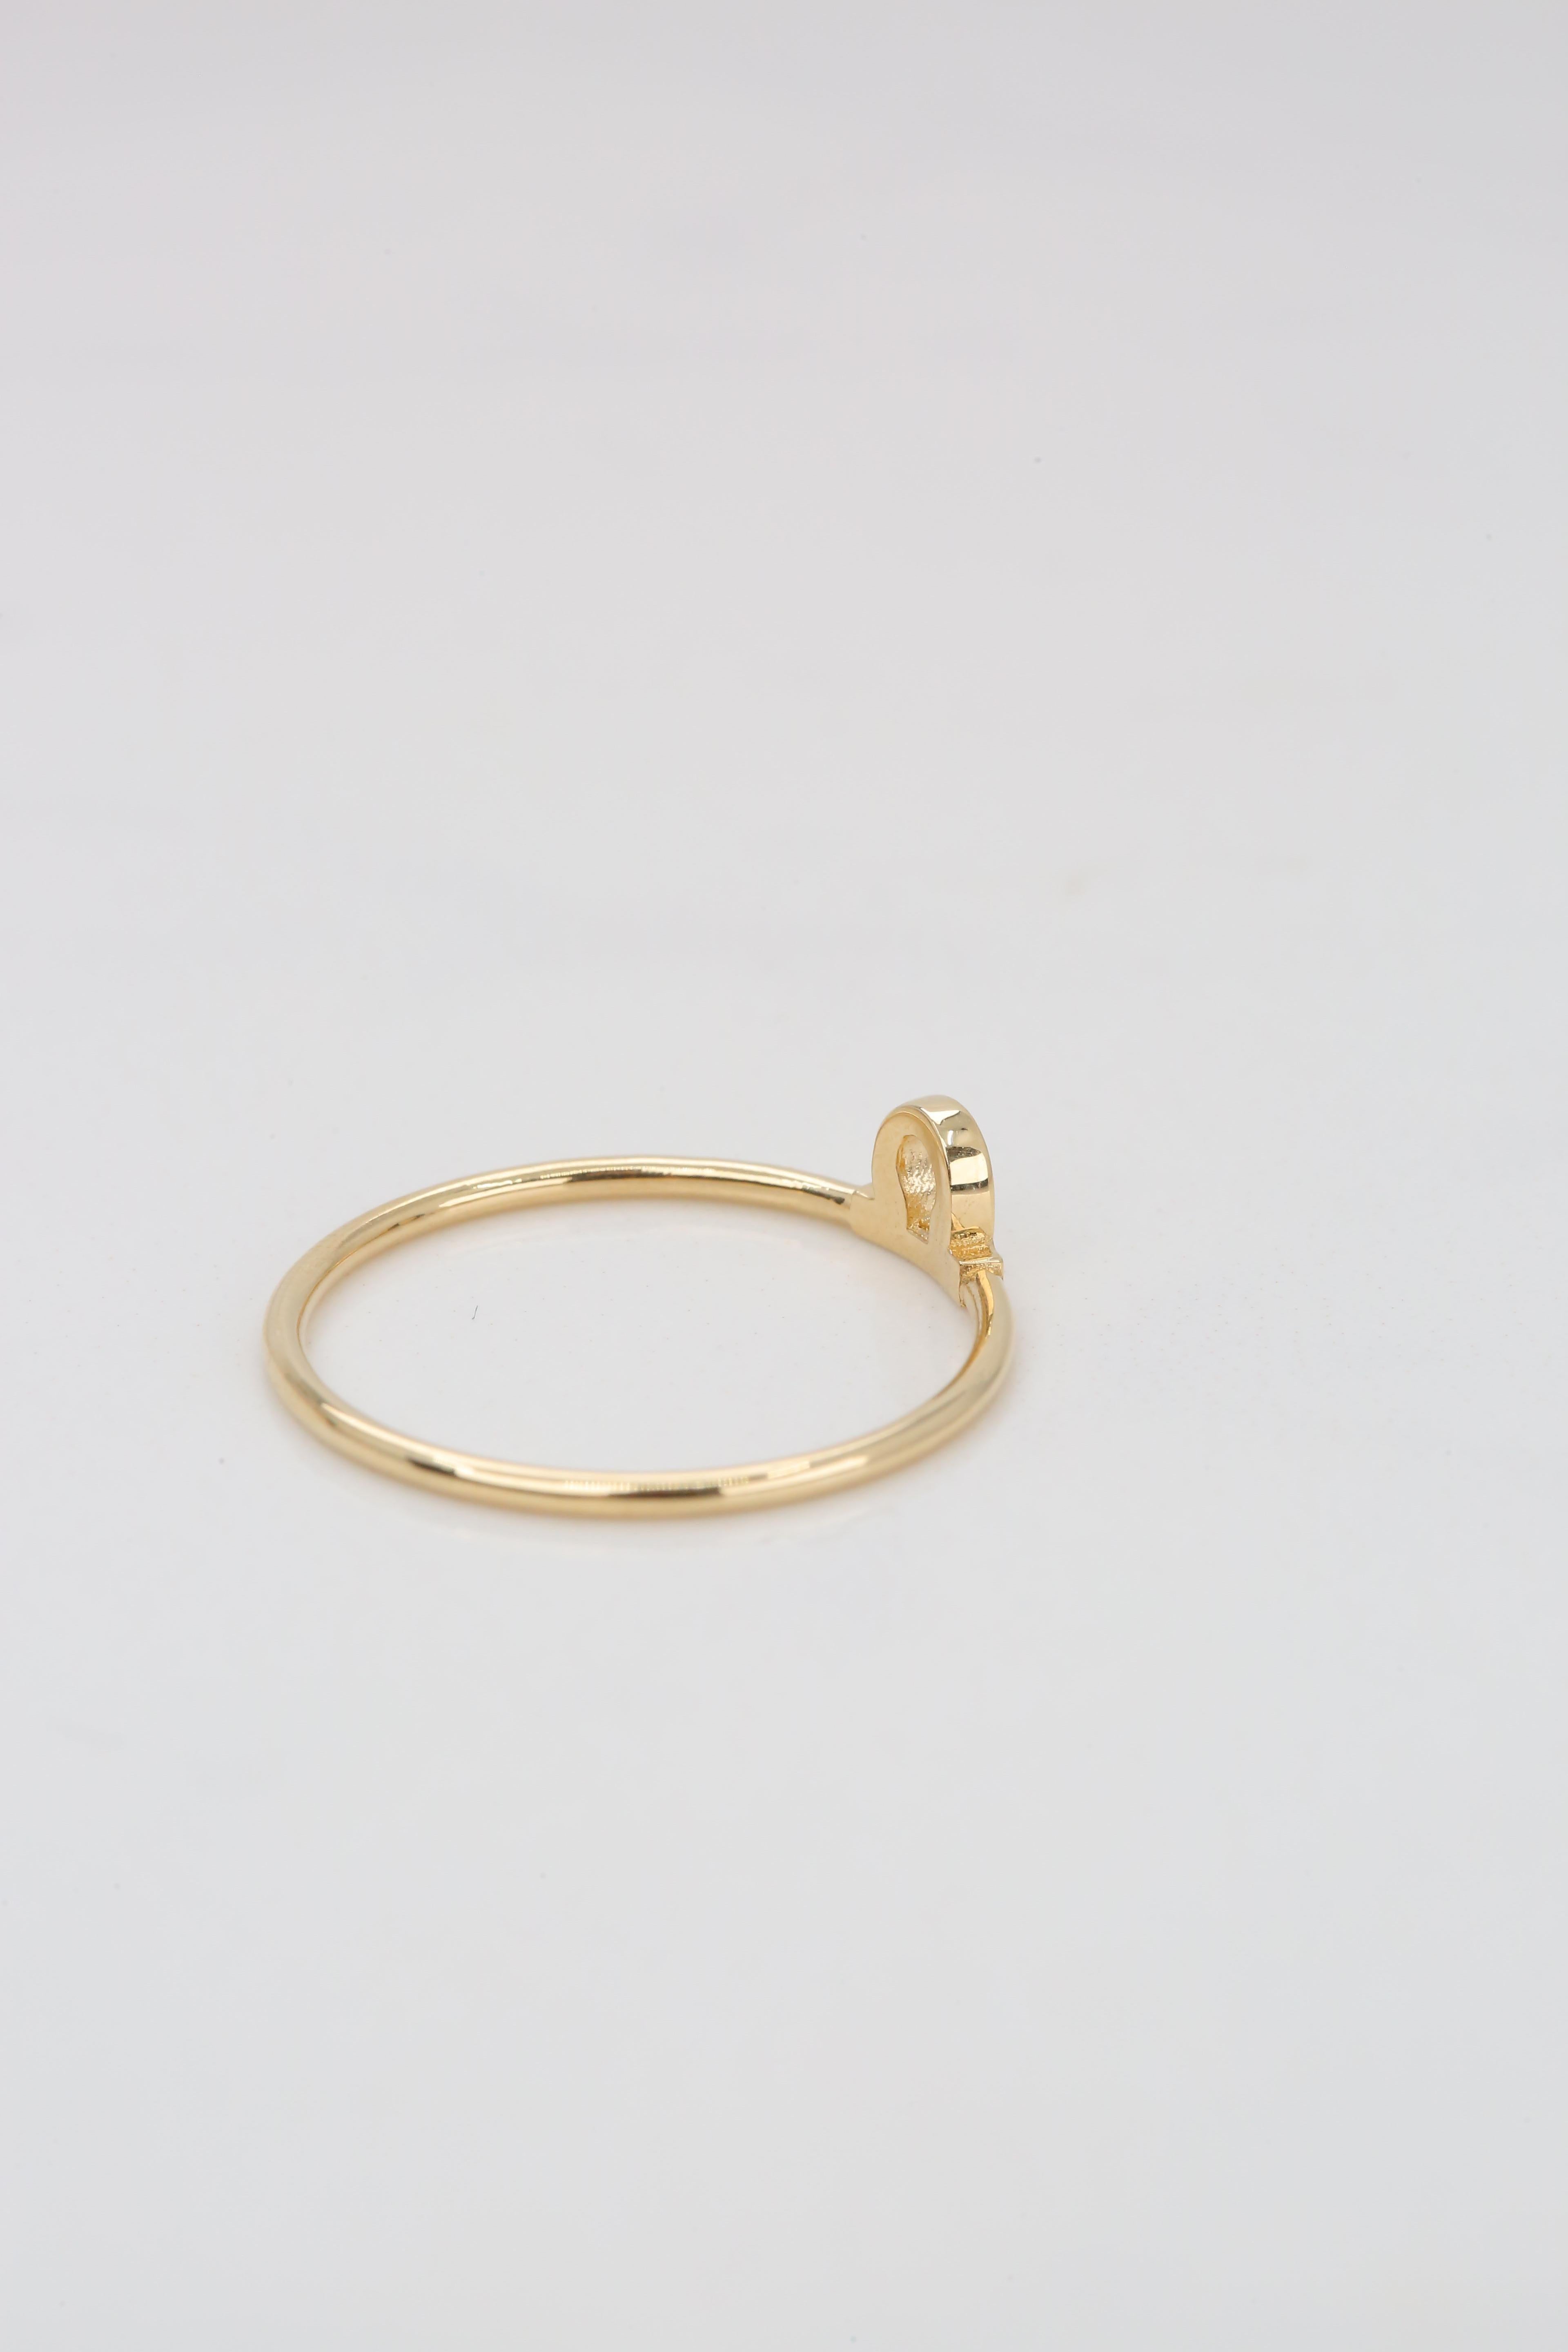 For Sale:  14K Gold Libra Zodiac Ring, Libra Sign Zodiac Ring 4